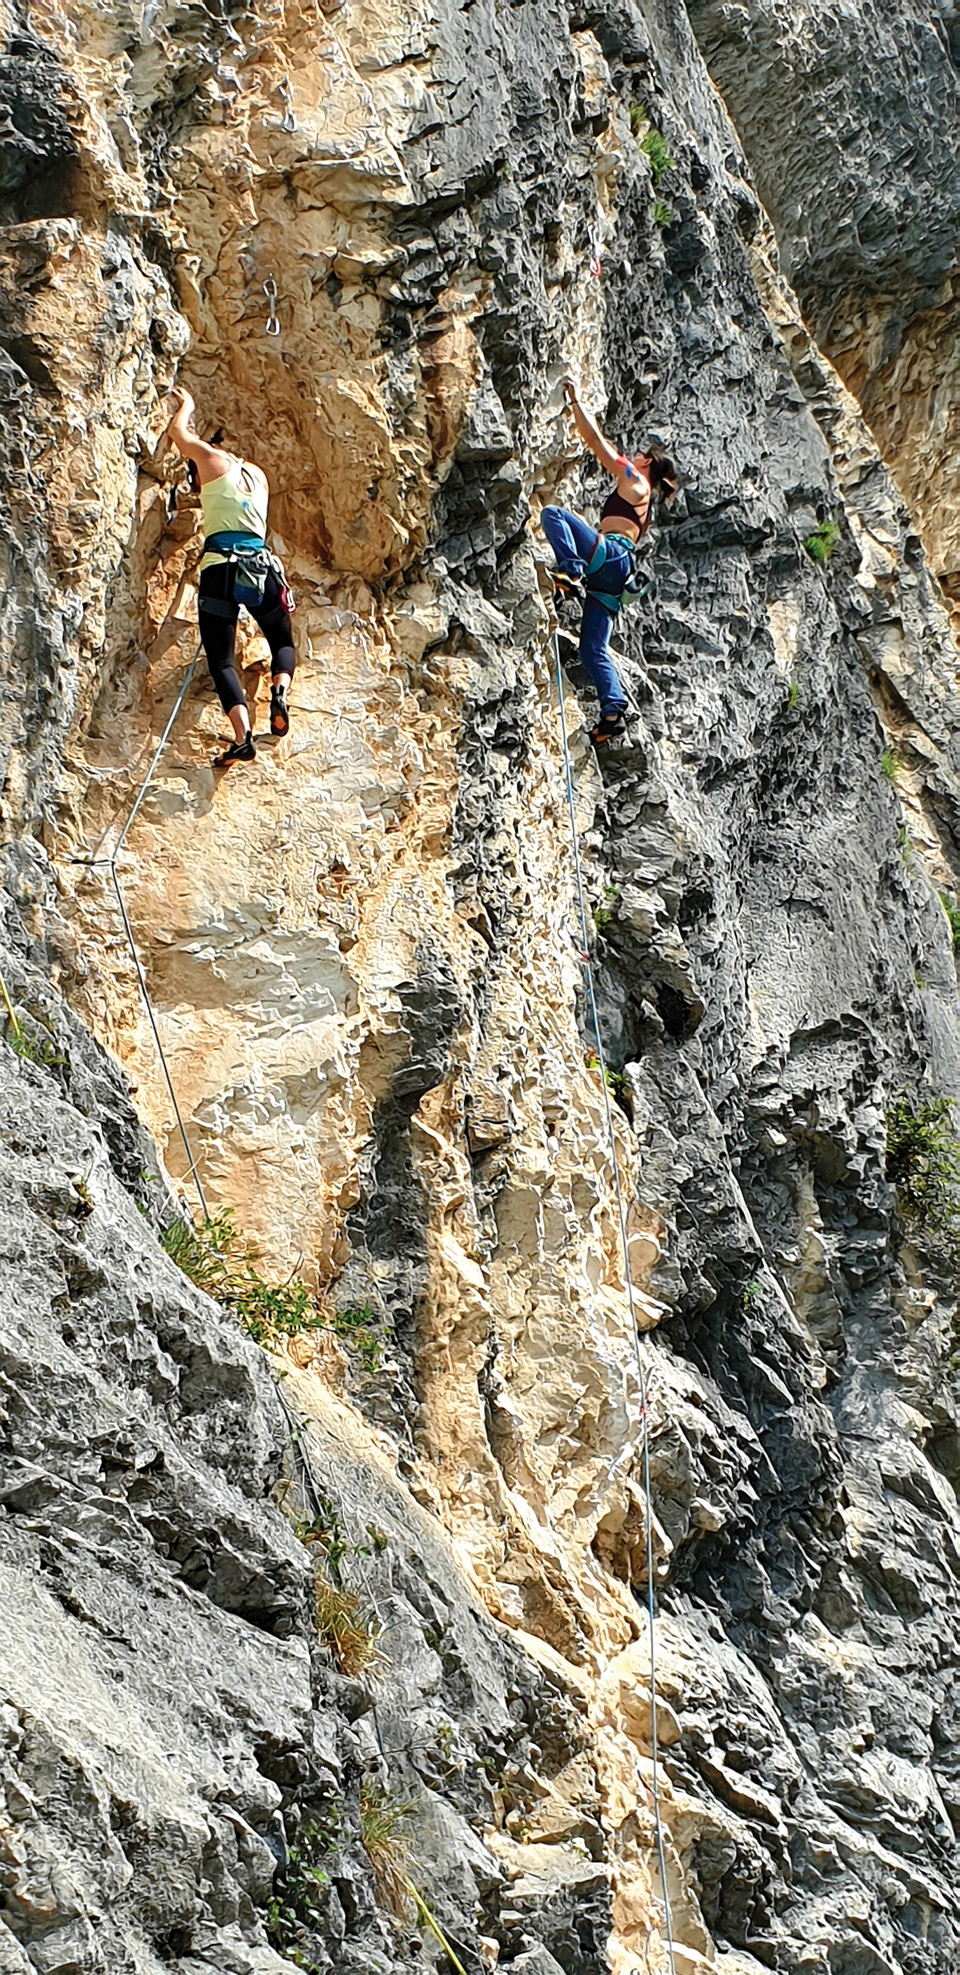 마쏘네 1암장에서
등반을 즐기는
이탈리아와 독일 여성
클라이머.